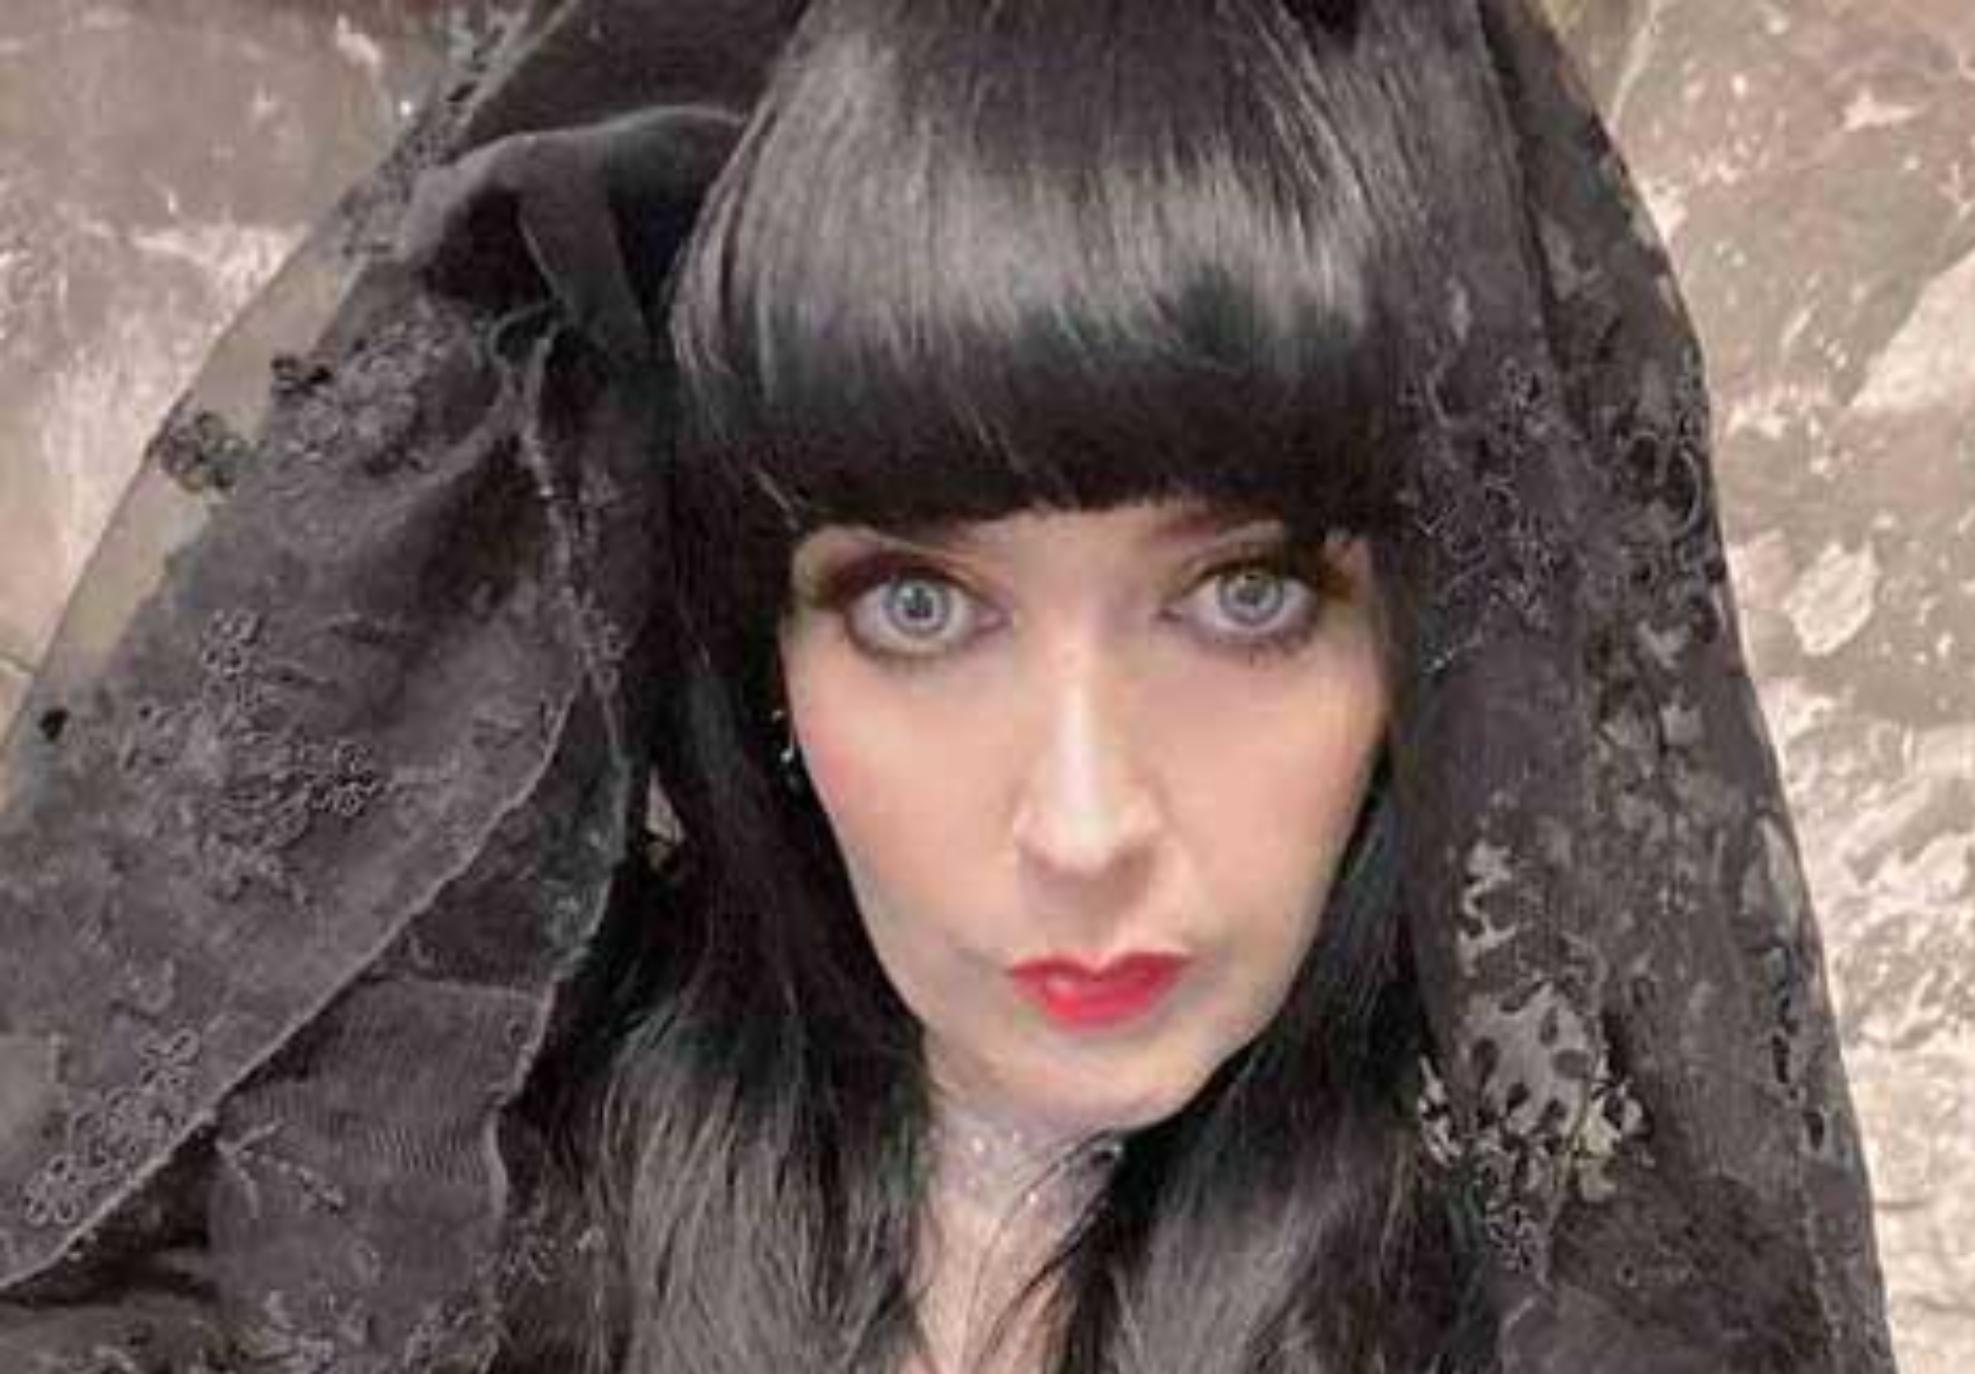 Η τραγουδίστρια που παντρεύτηκε ένα φάντασμα και ζήτησε εξορκισμό για να γλιτώσει από την κόλαση